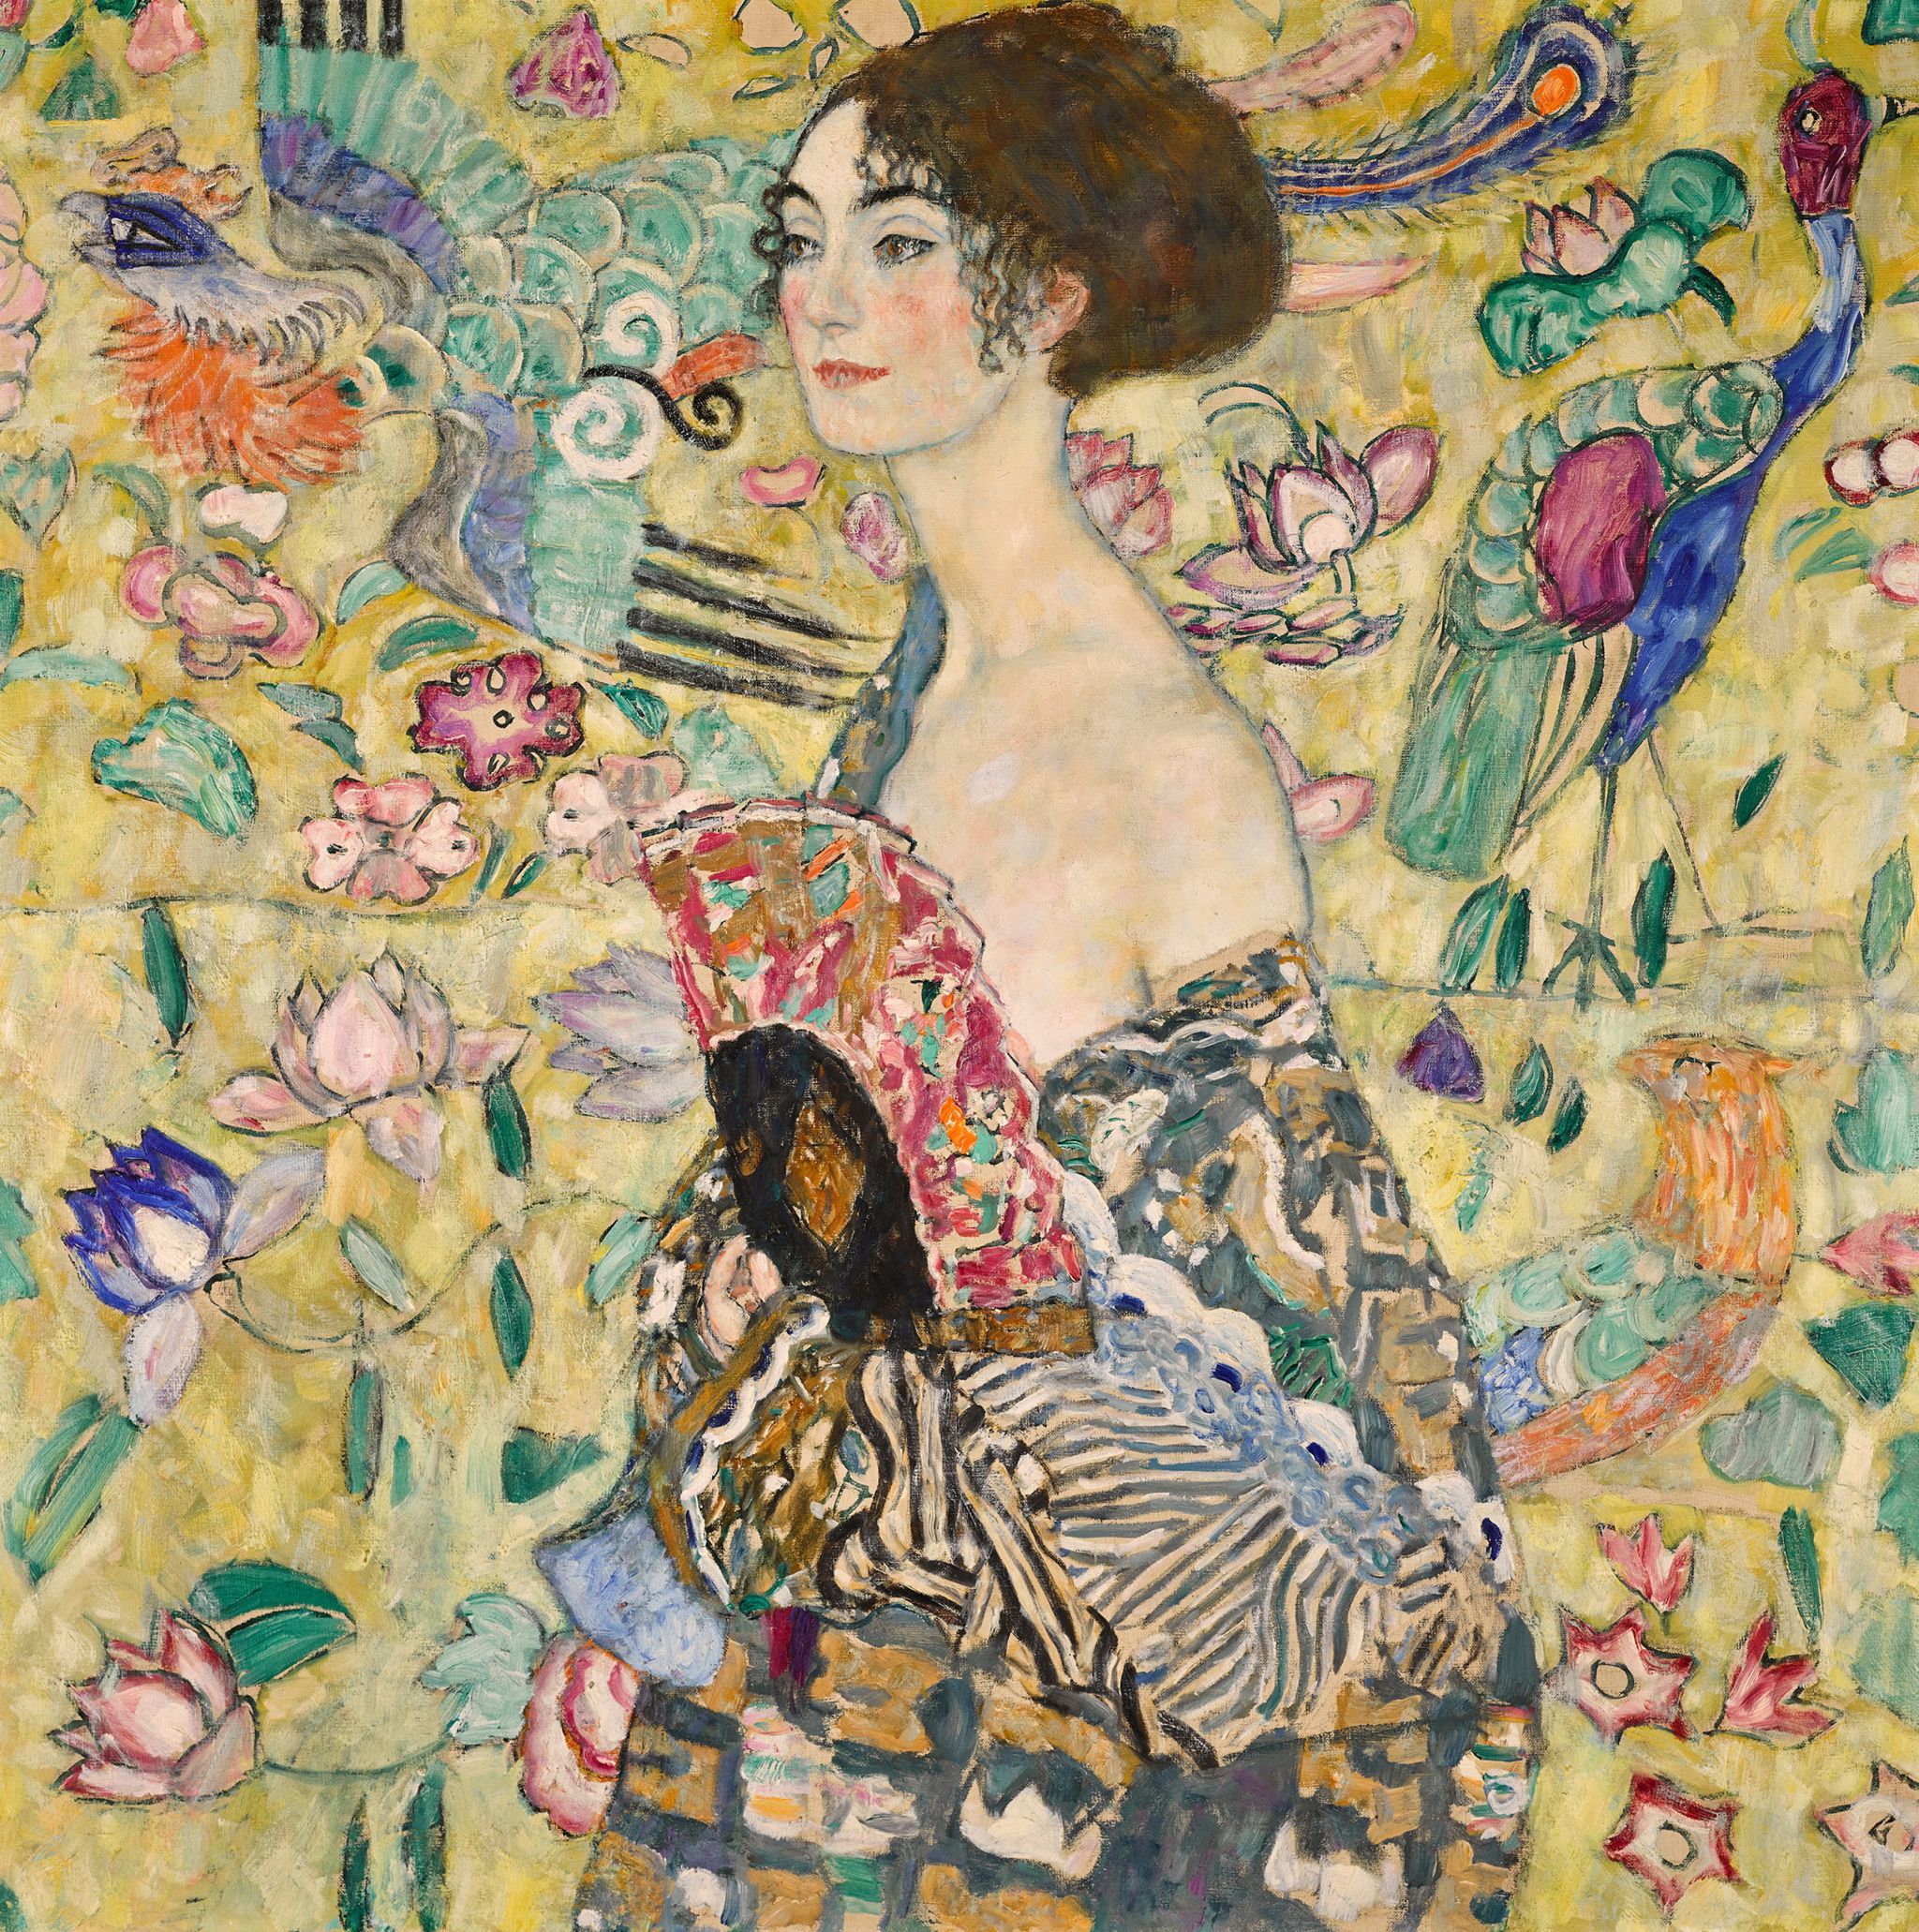 Lady with a Fan portrait by Gustav Klimt